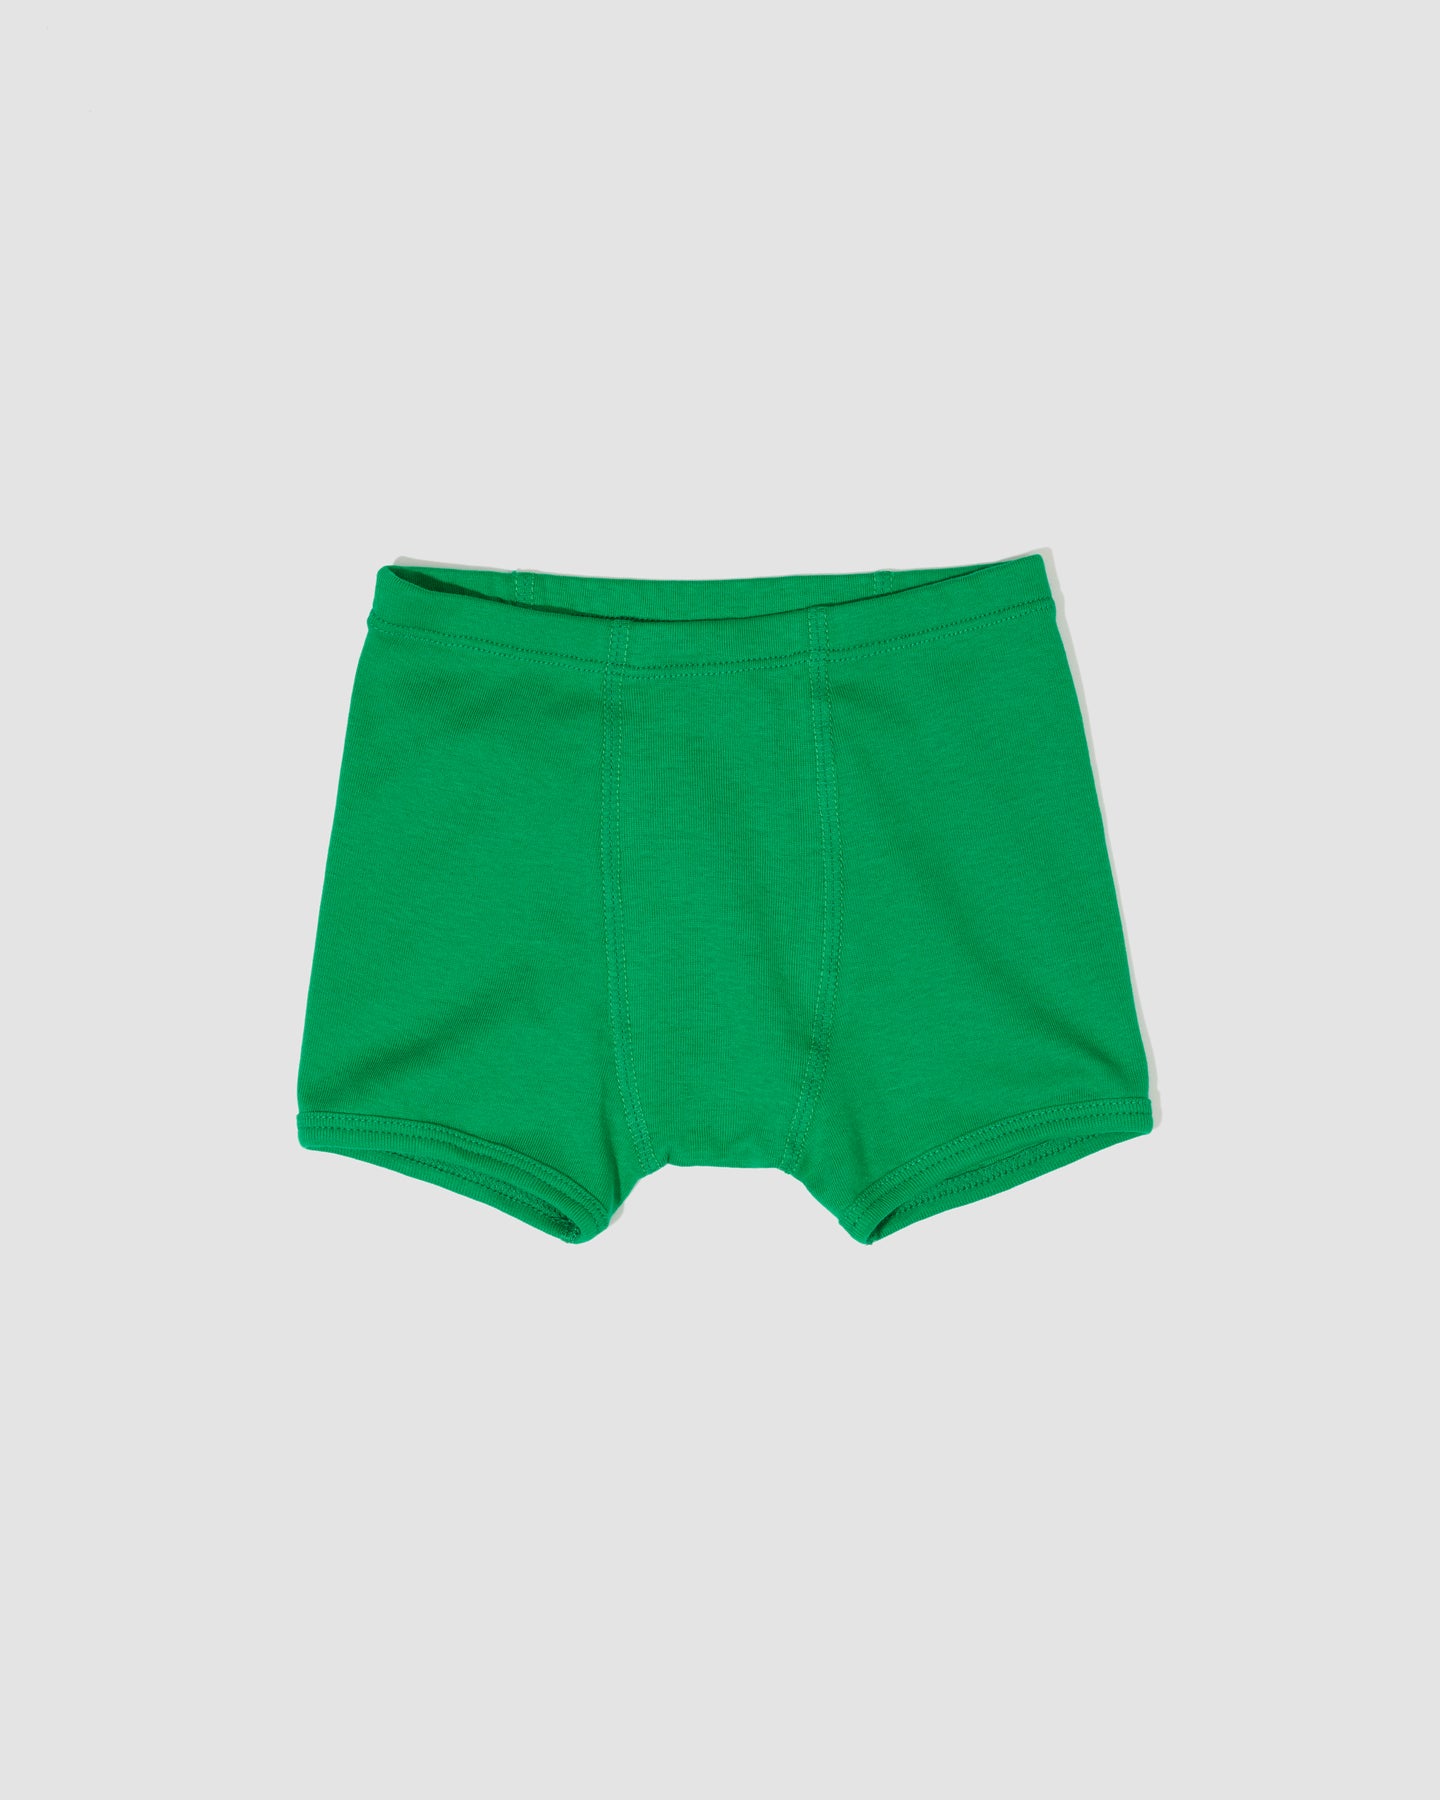 Kids Kecks Green Flash Print Boxer Shorts